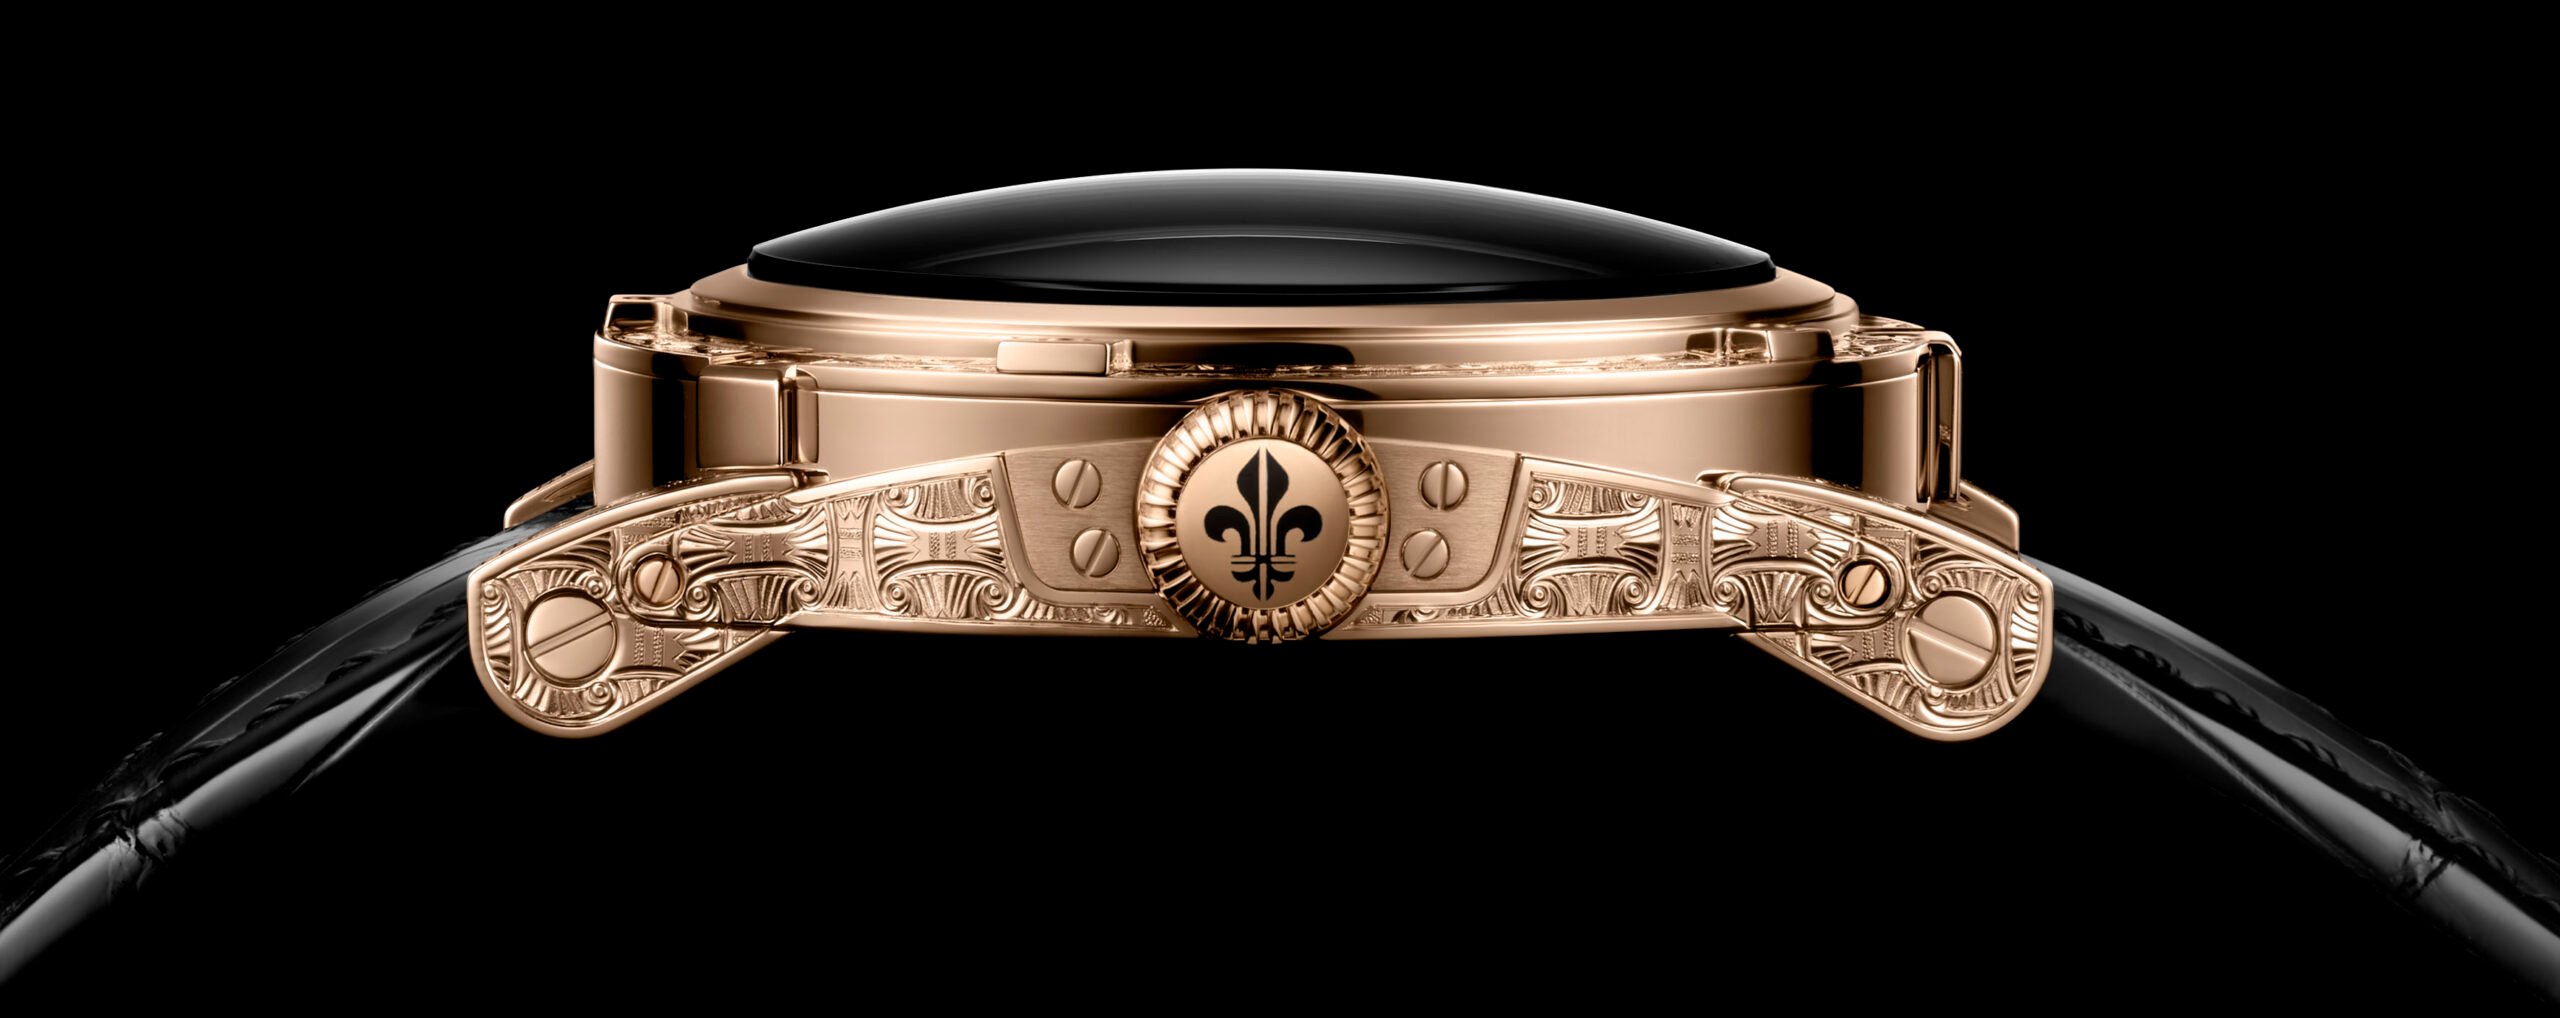 Watches & Wonders 2021: Louis Moinet Releases The Unique 